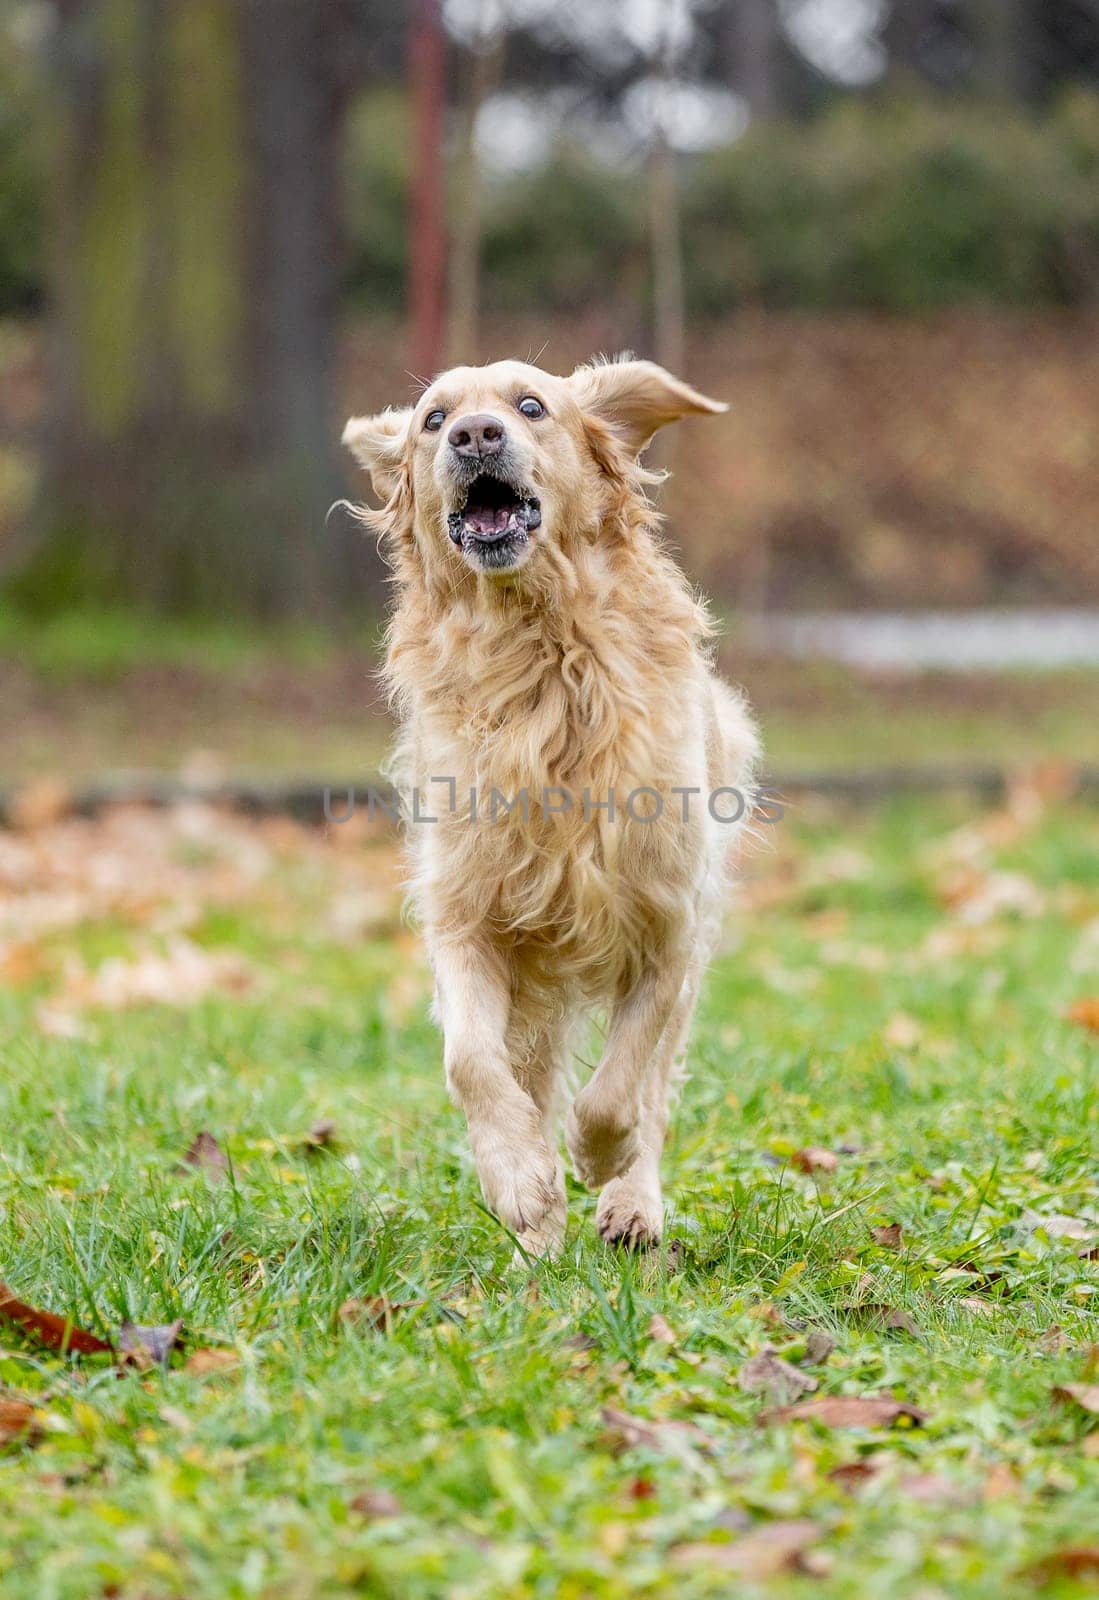 Runing golden labrador retriever outside, dog animal concept by Kadula